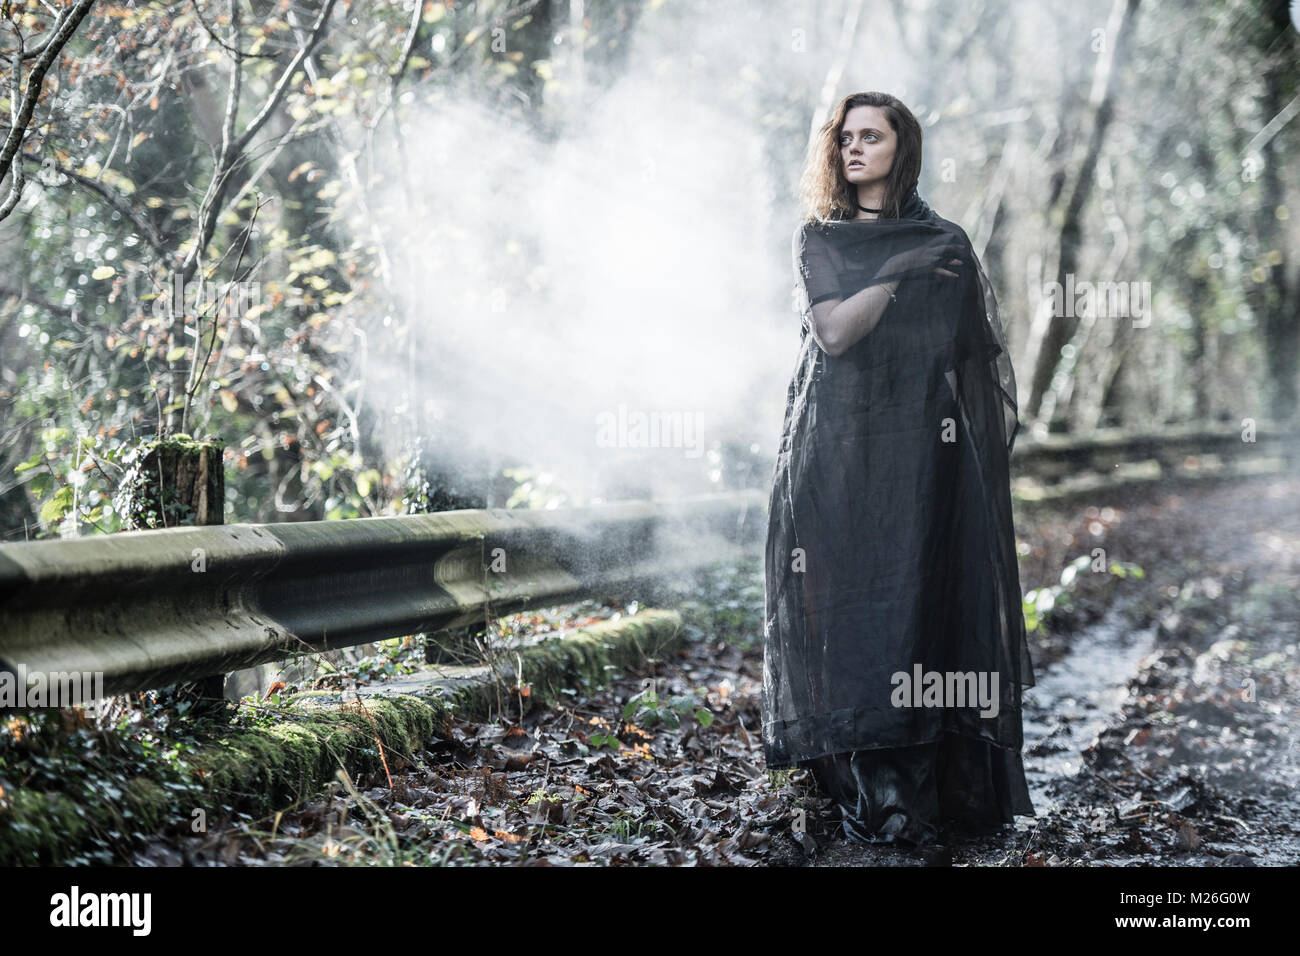 Femme de mystère / Goth : modèle d'une jeune femme habillée d'une robe noire et le cap, seul sur une route abandonnée misty Banque D'Images